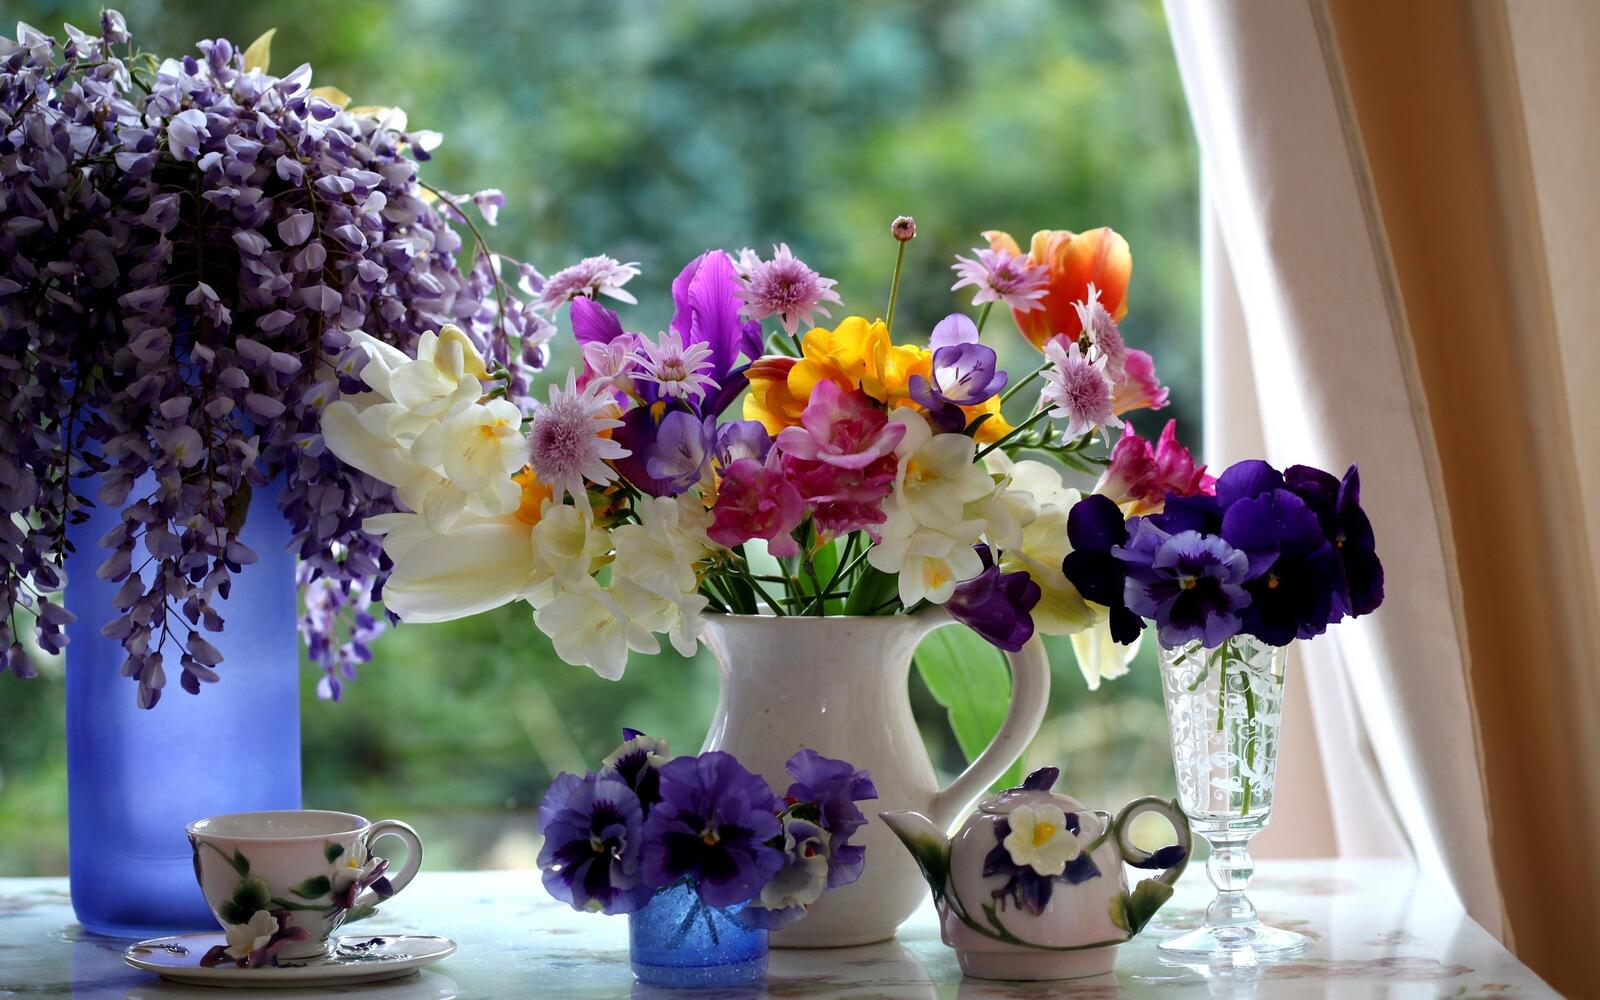 桌面上的壁纸窗台 花瓶 鲜花